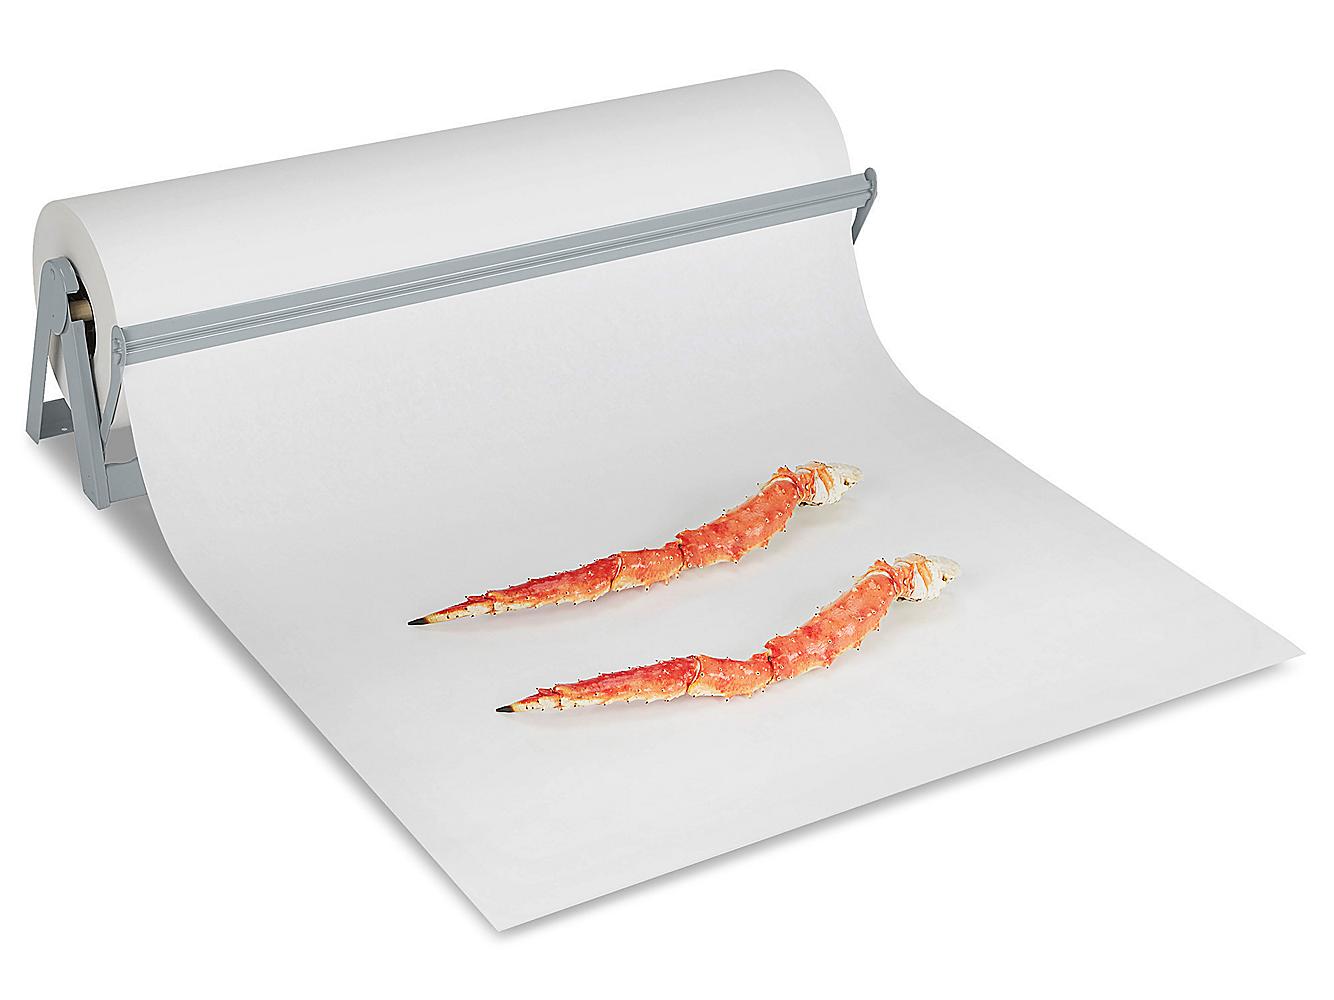 Butcher Paper Roll - White, 30 x 1,100' S-11460 - Uline